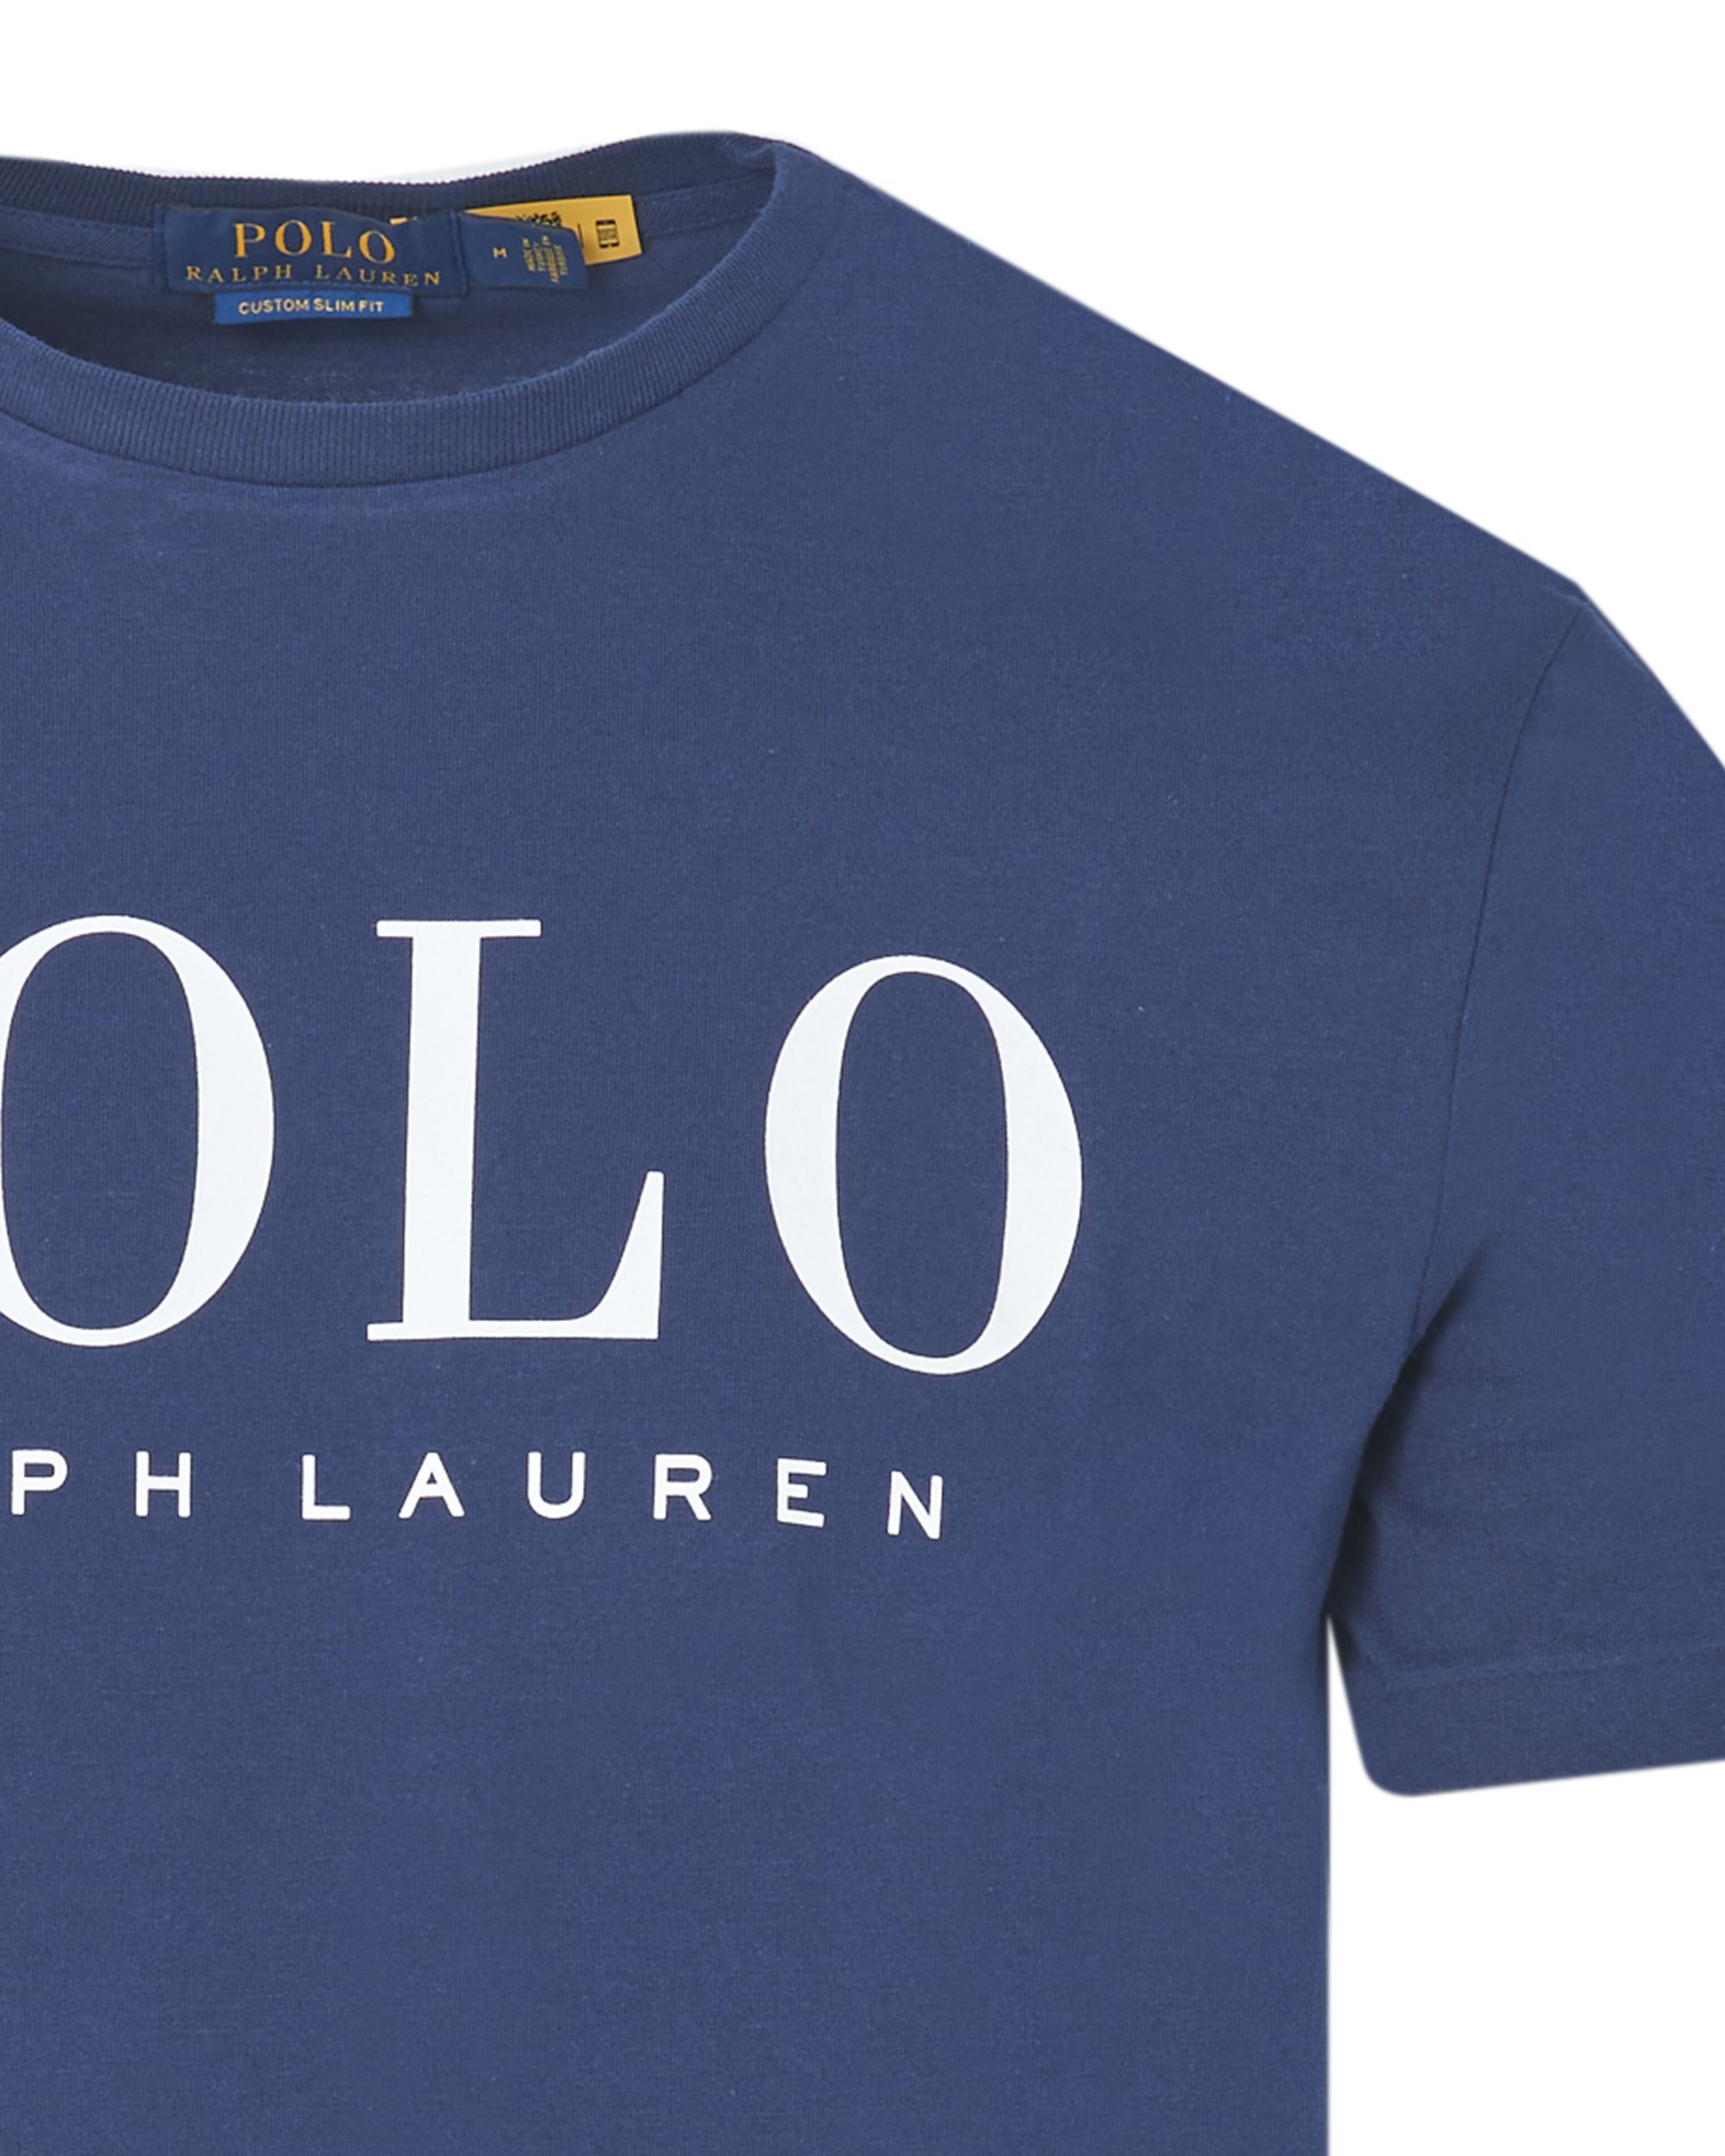 Polo Ralph Lauren T-shirt KM Donker blauw 083481-001-L